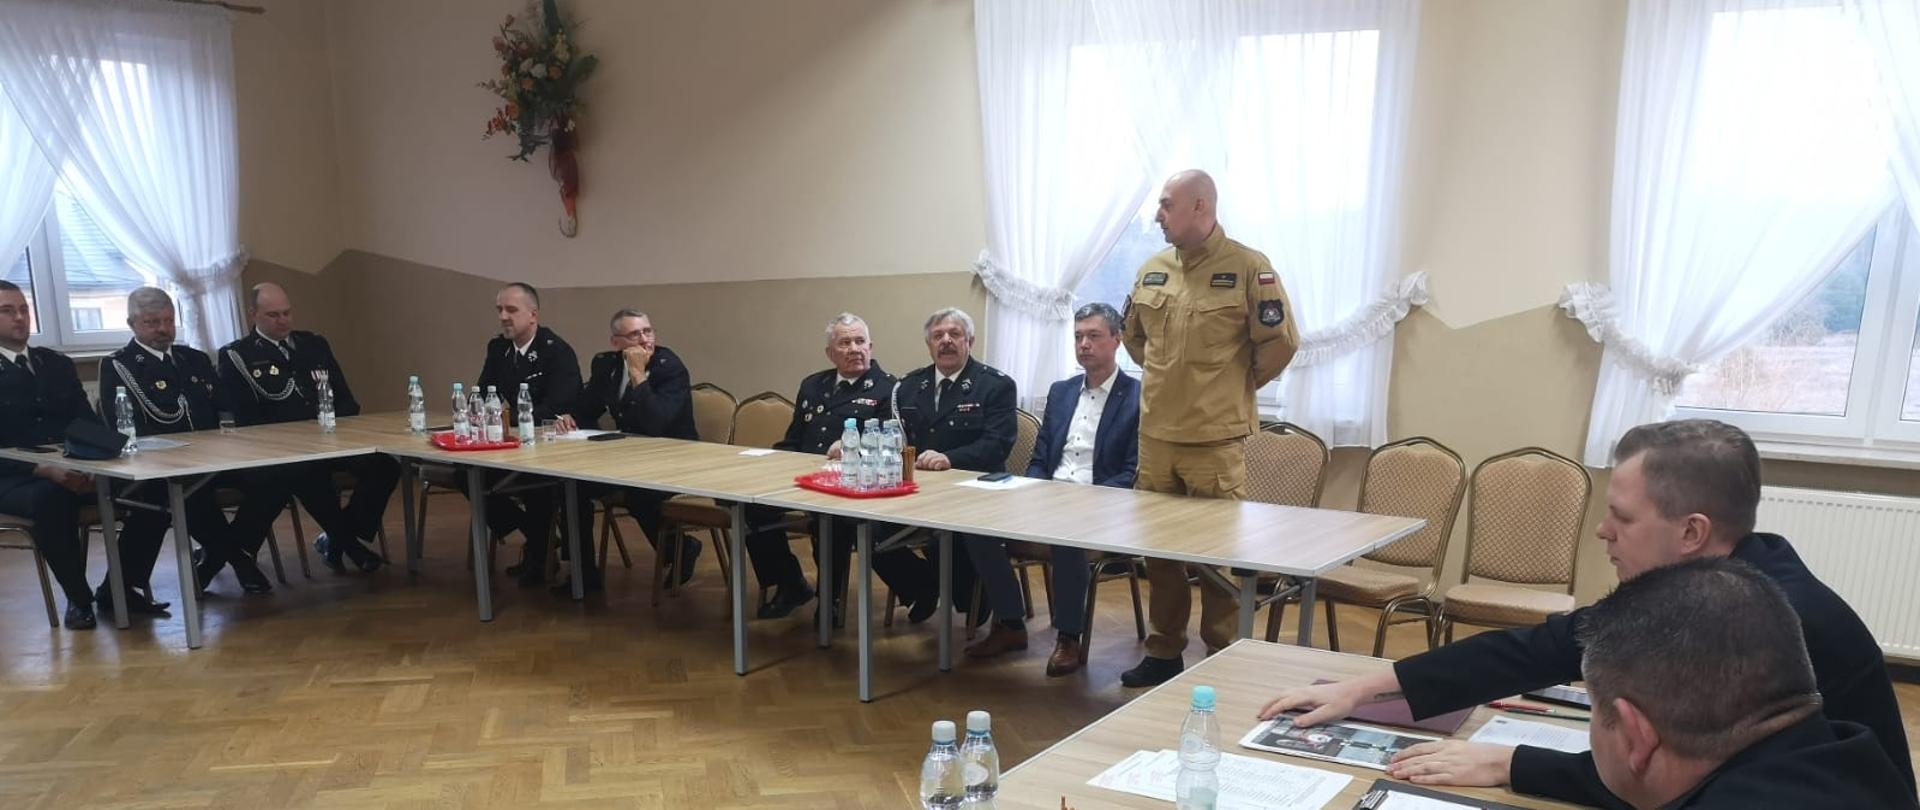 Zdjęcie przedstawia gości i organizatorów spotkania sprawozdawczego Ochotniczej Straży Pożarnej w Woli Murowanej.